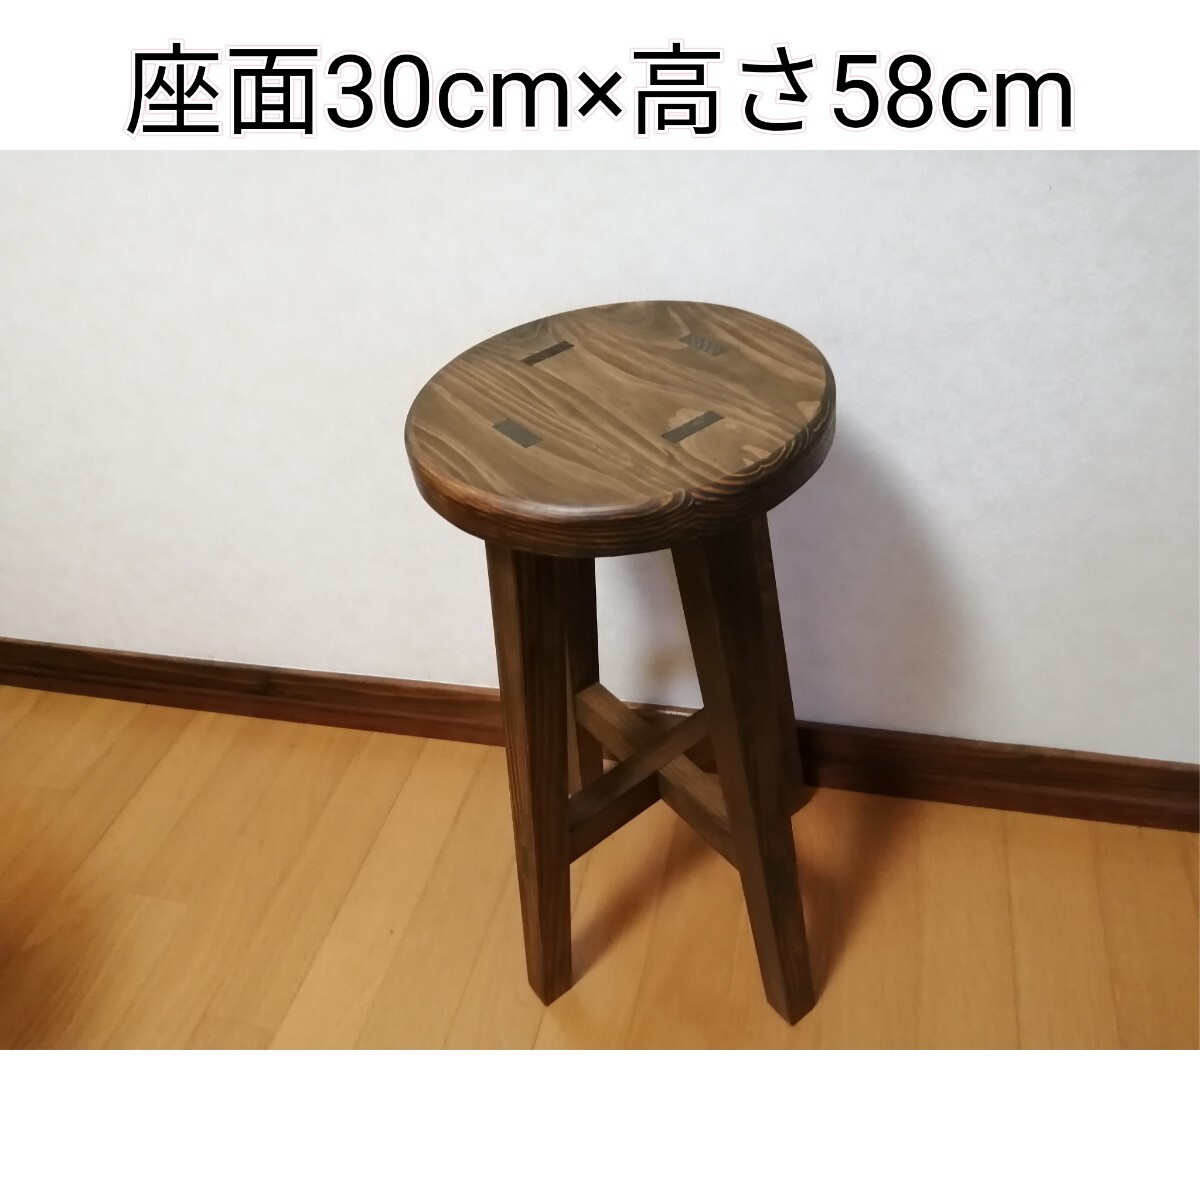 【ほぞ組】木製スツール 座面幅30cm×高さ58cm 丸椅子 stool の画像1